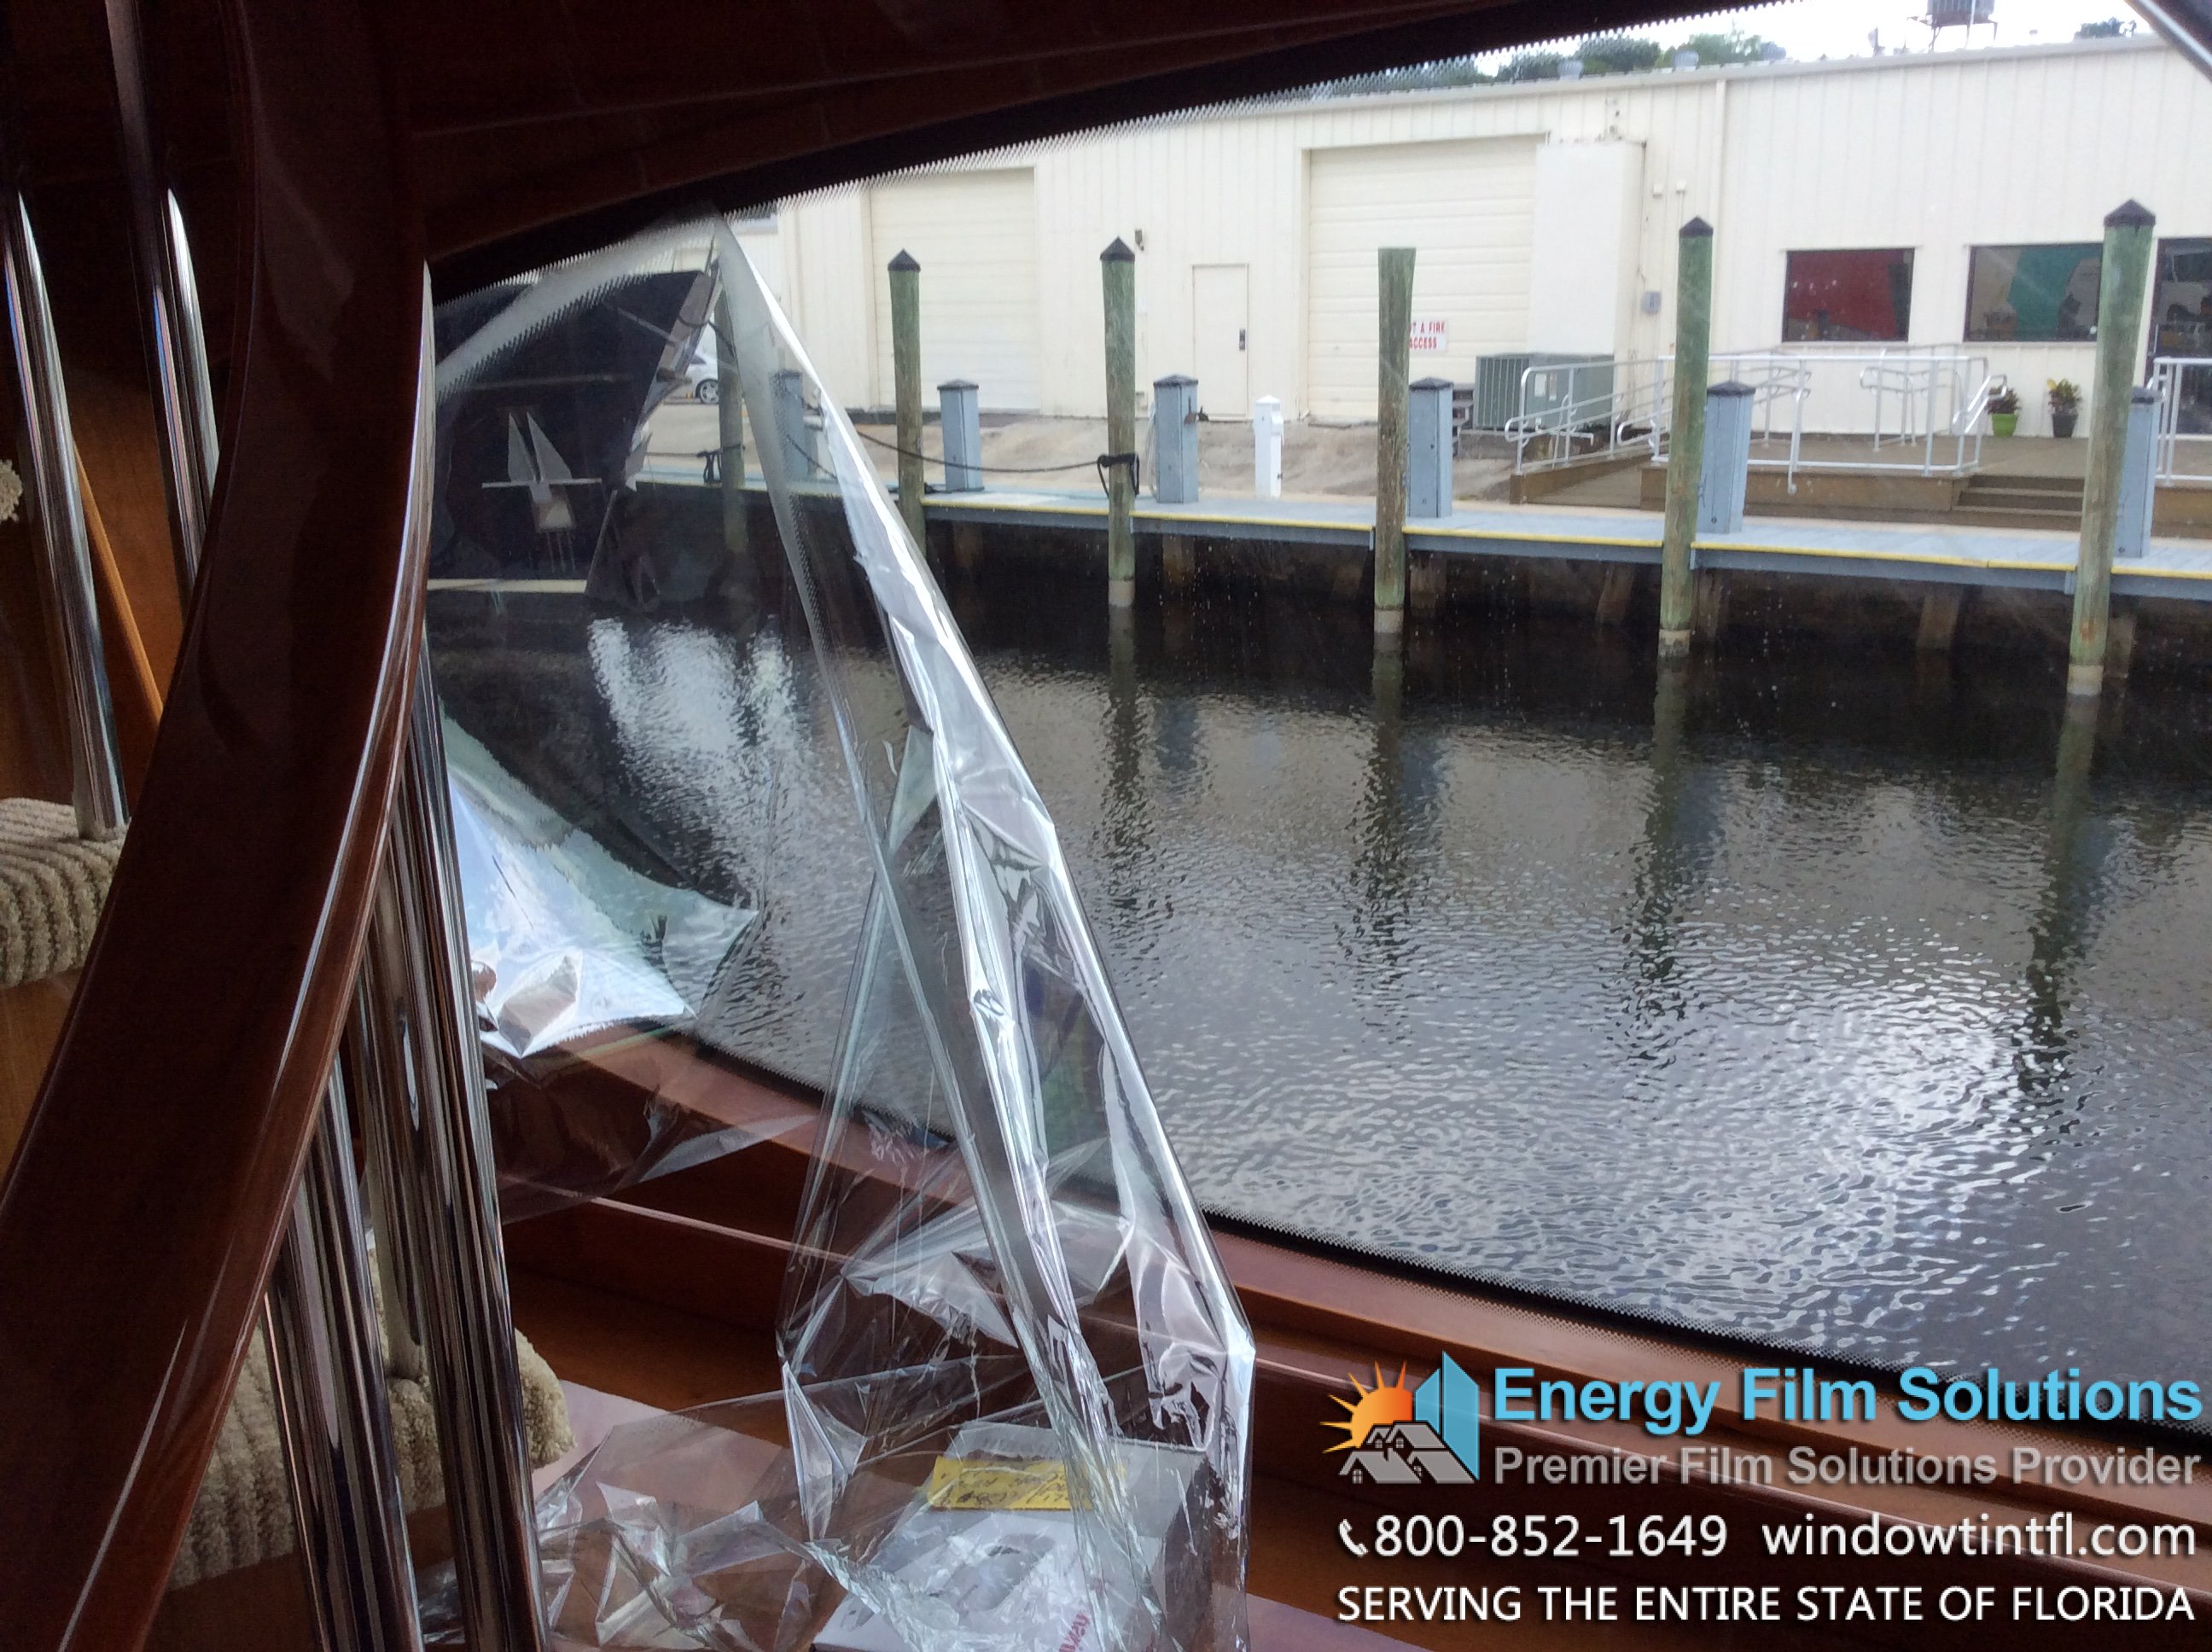 vkool marine window tint yacht959